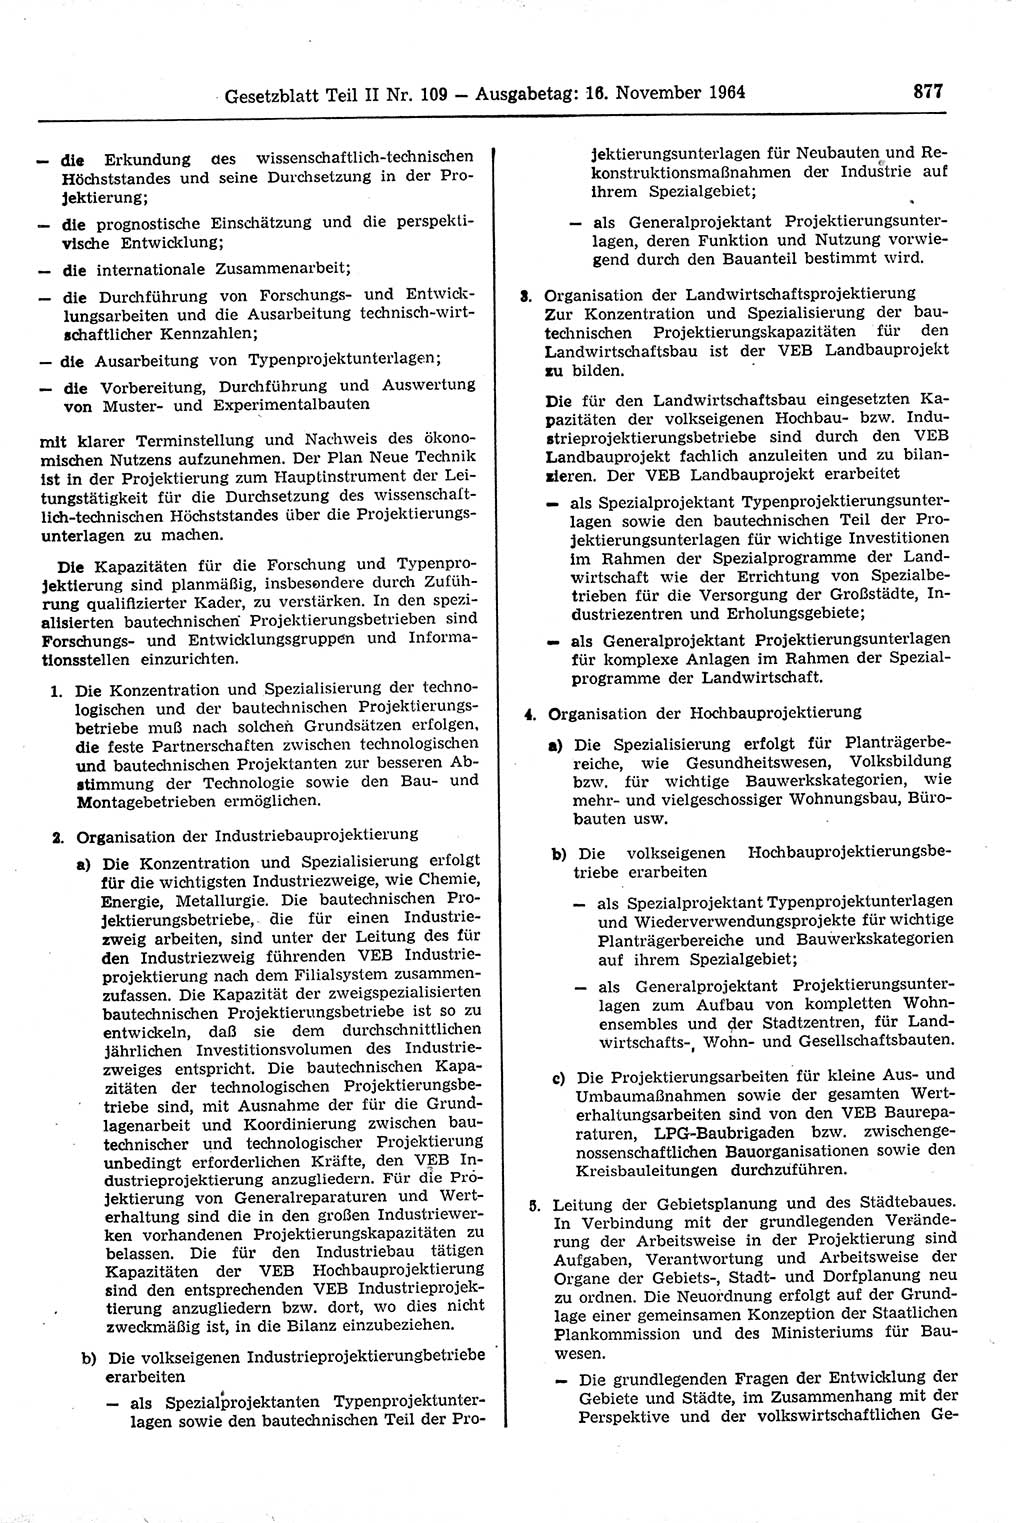 Gesetzblatt (GBl.) der Deutschen Demokratischen Republik (DDR) Teil ⅠⅠ 1964, Seite 877 (GBl. DDR ⅠⅠ 1964, S. 877)